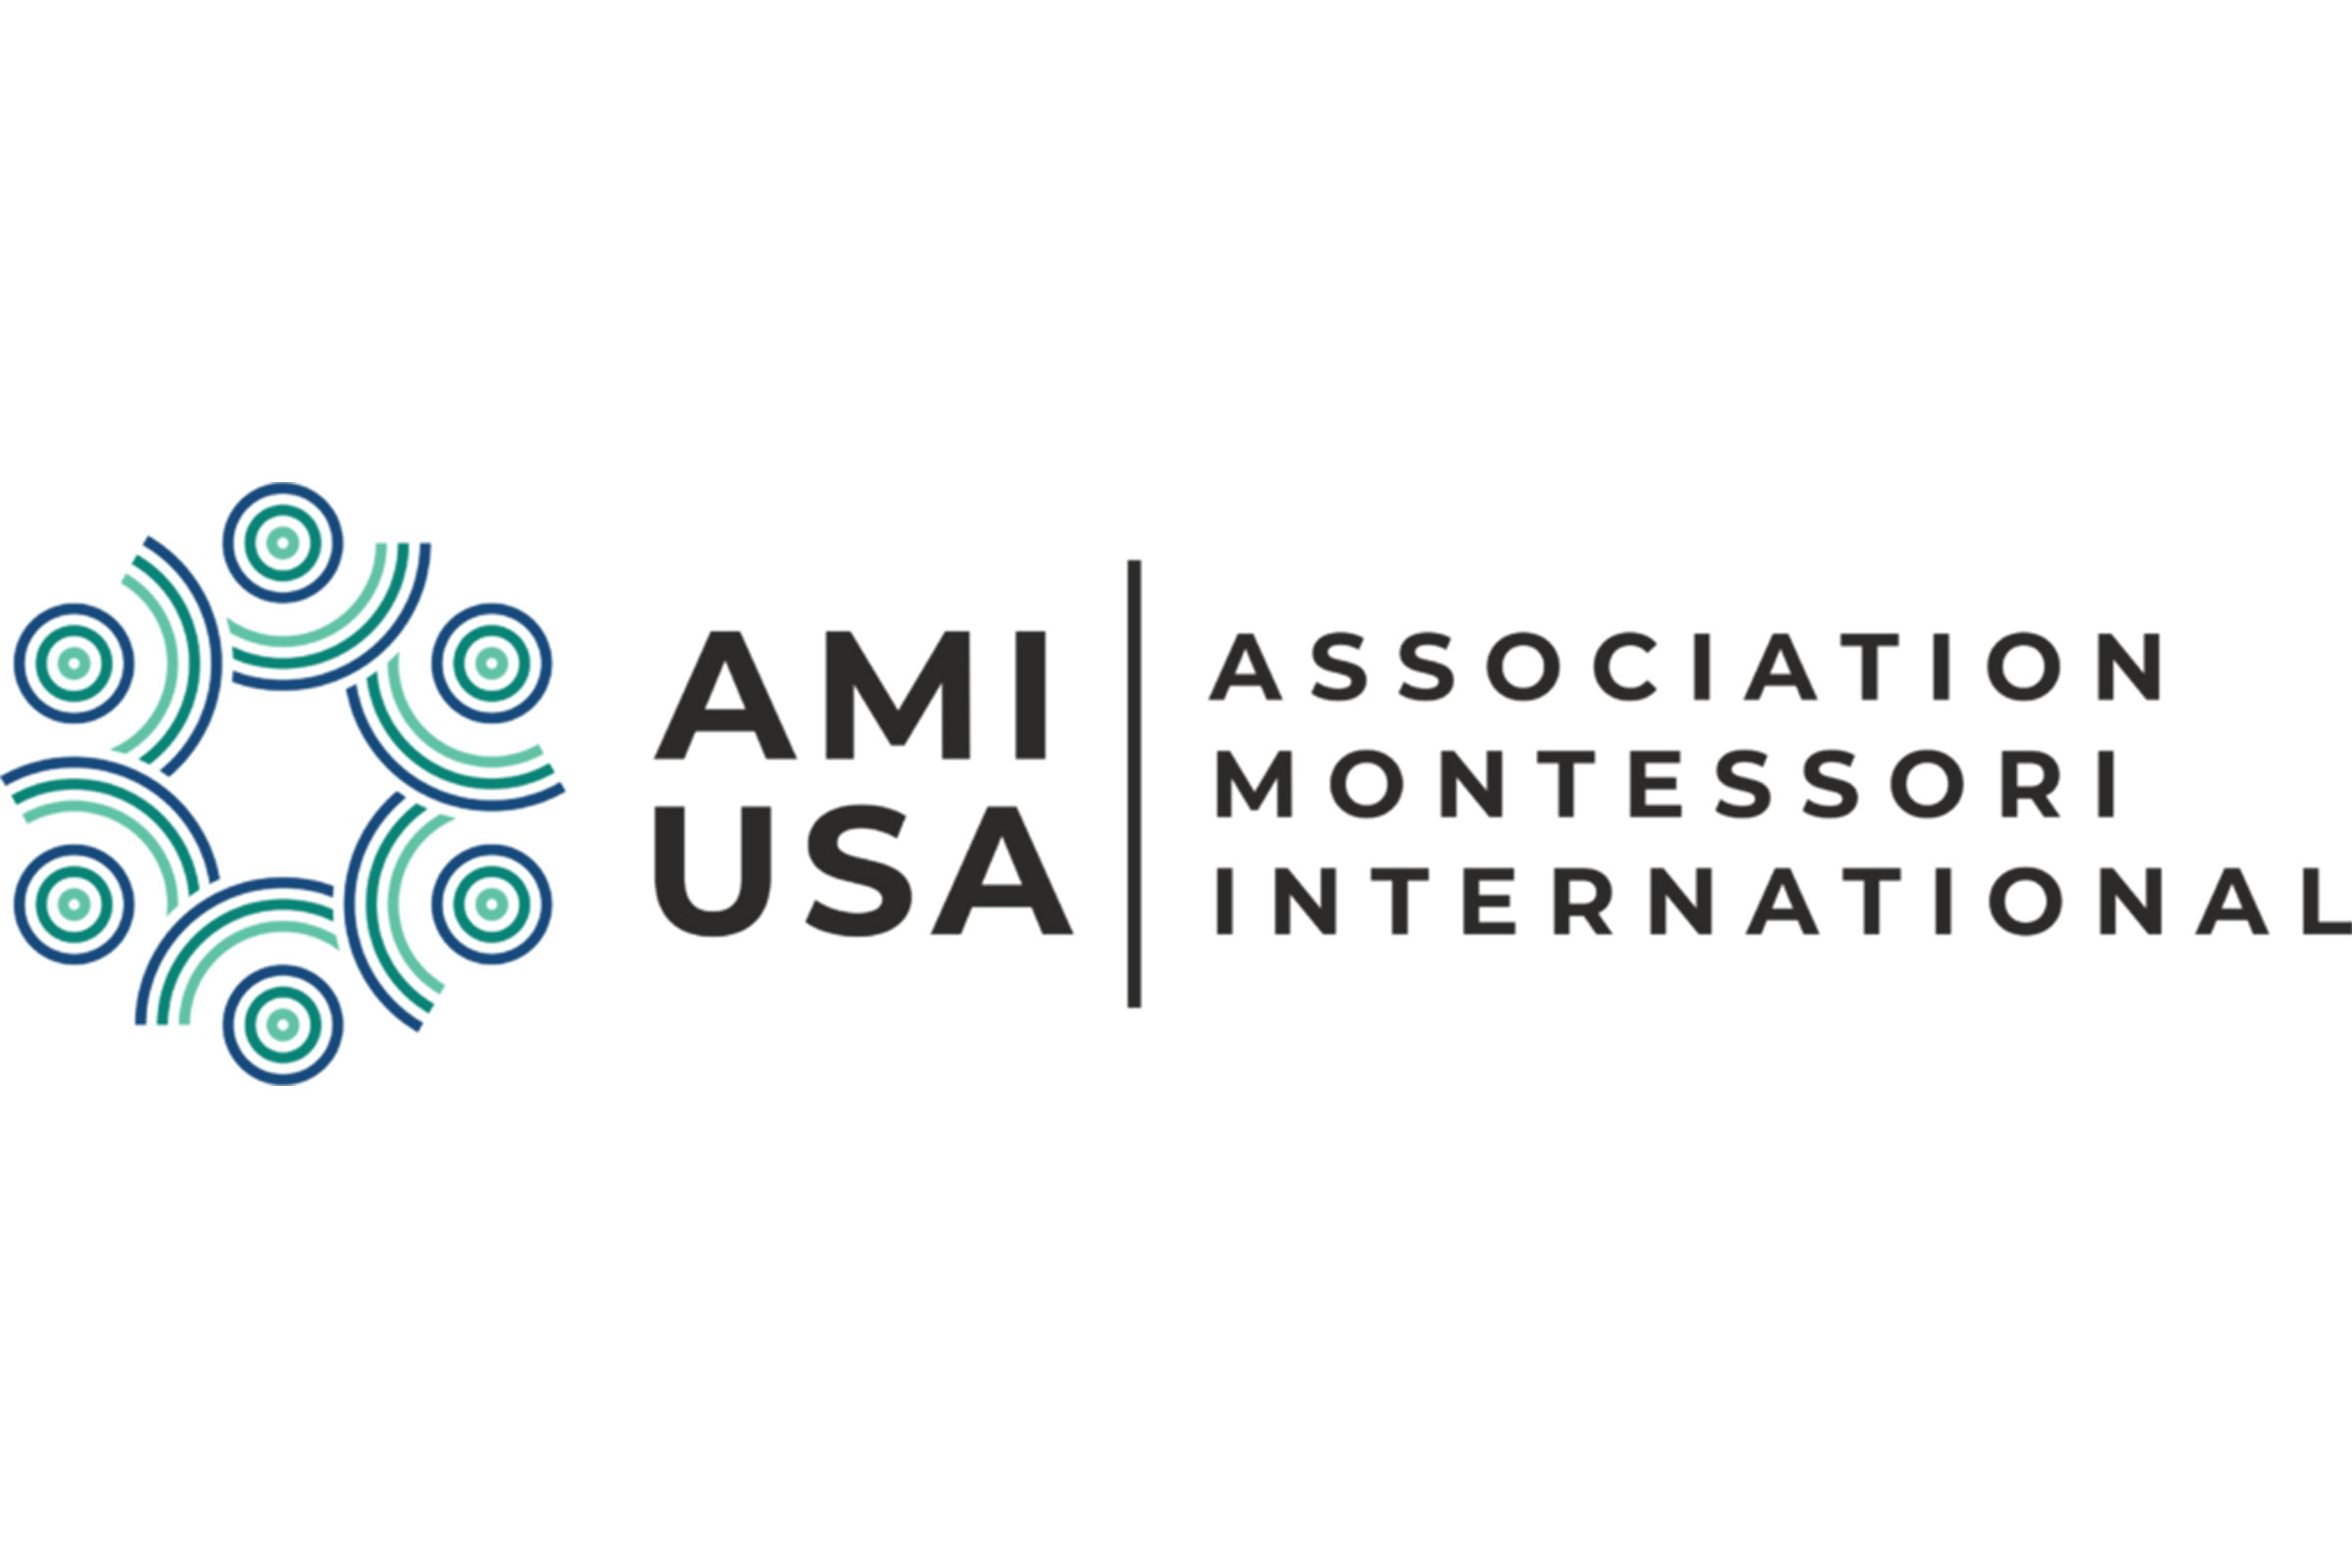 Association Montessori International / USA logo